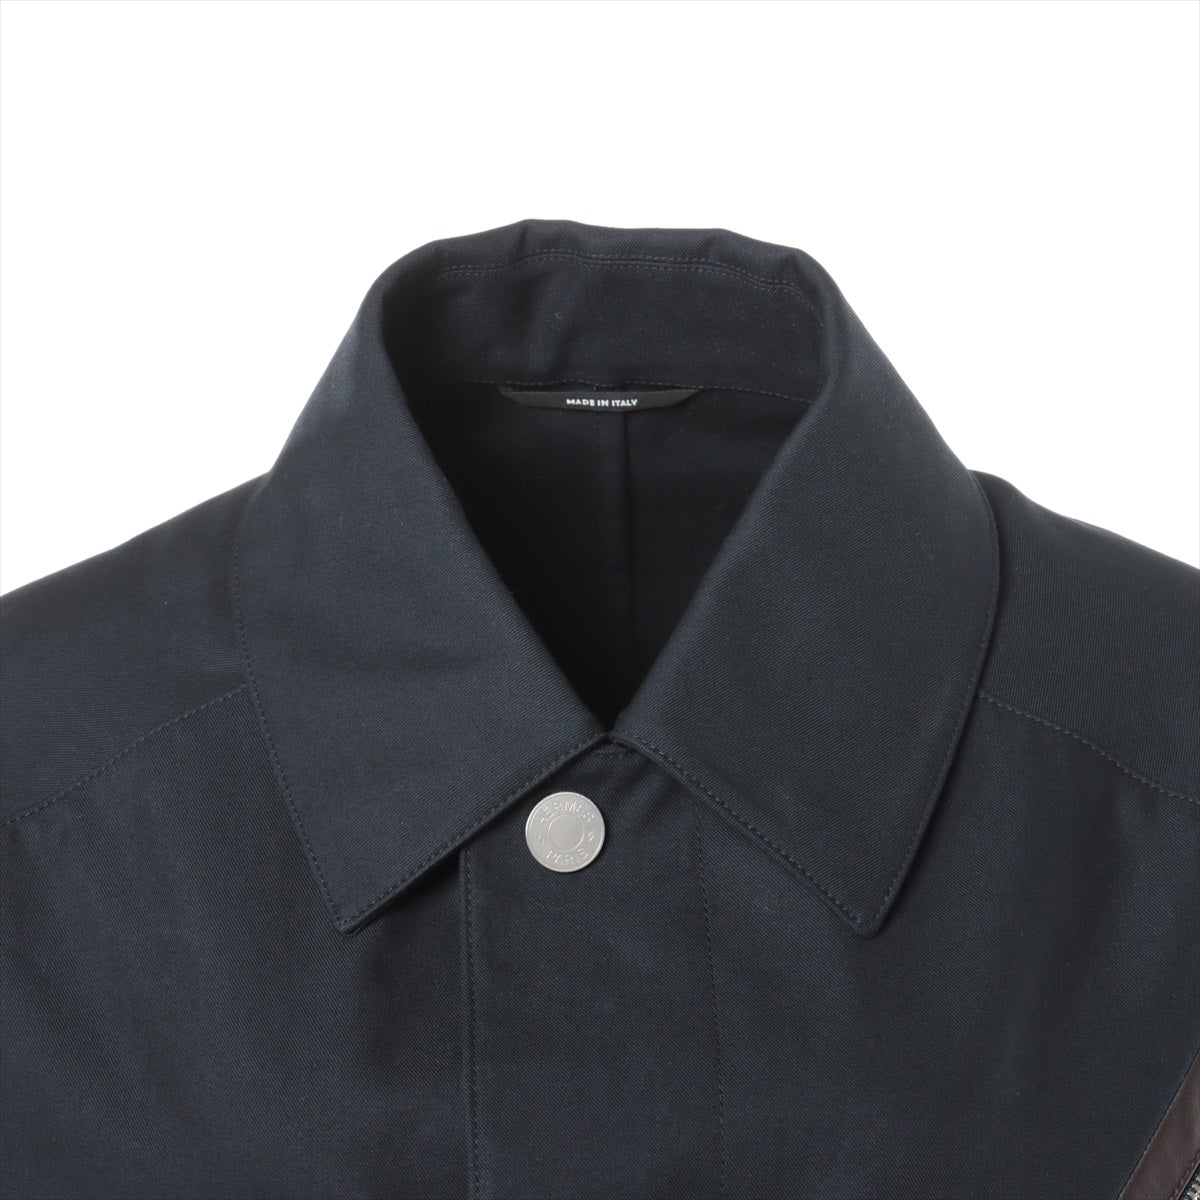 Hermès Cotton coats 48 Men's Black  Serie button PT9001 22-5111